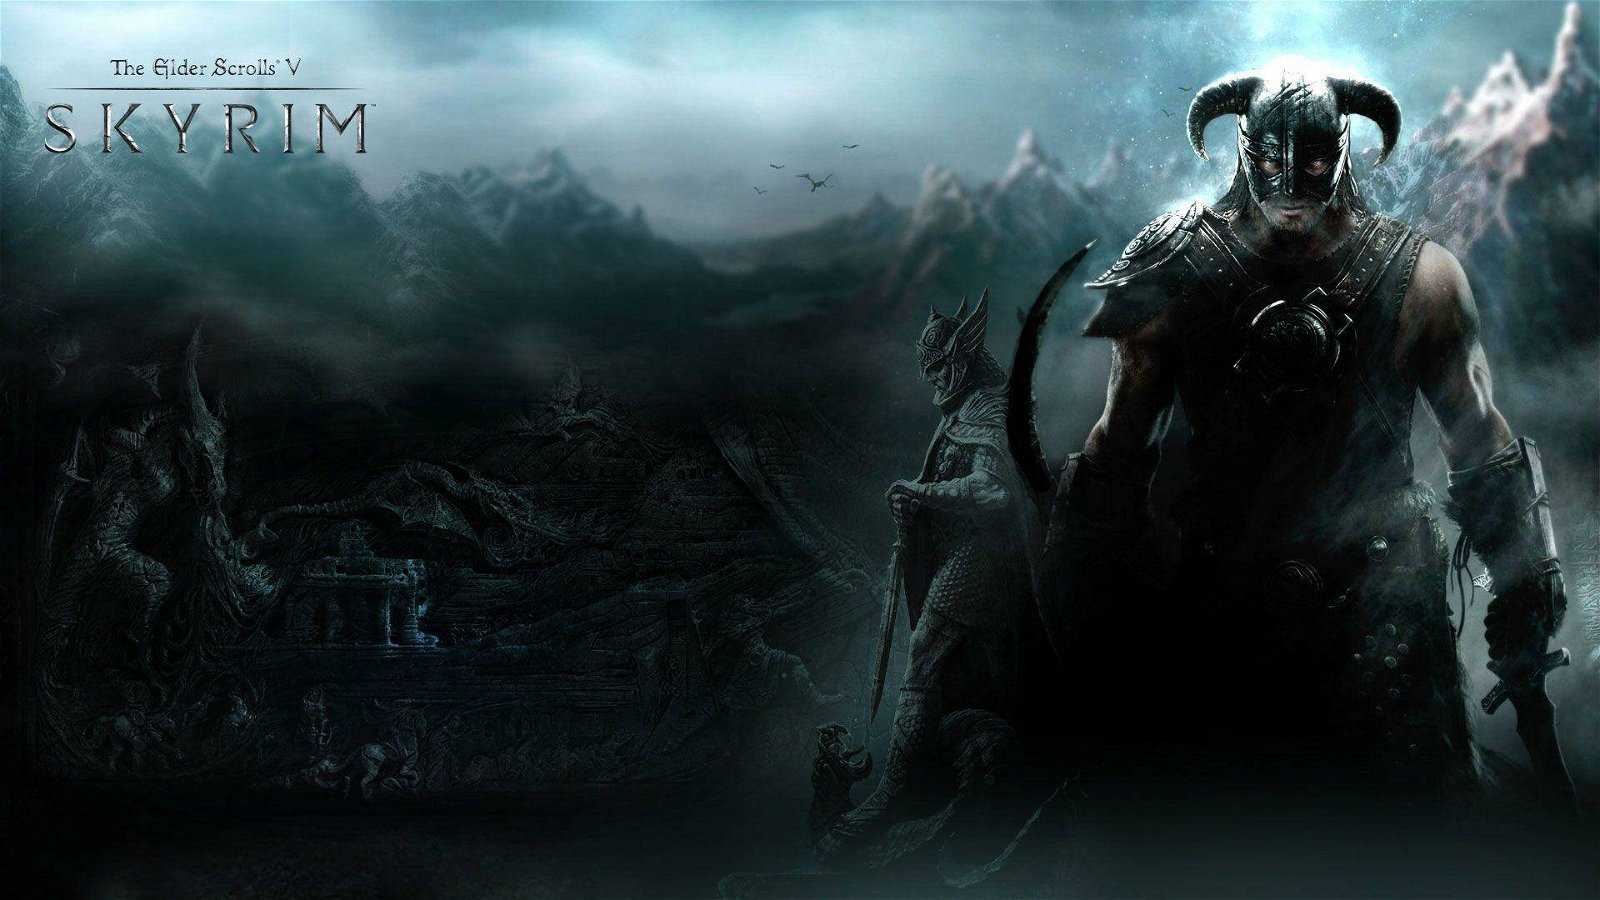 Immagine di Skyrim: Solitude ricreata in modo spettacolare su Far Cry 5